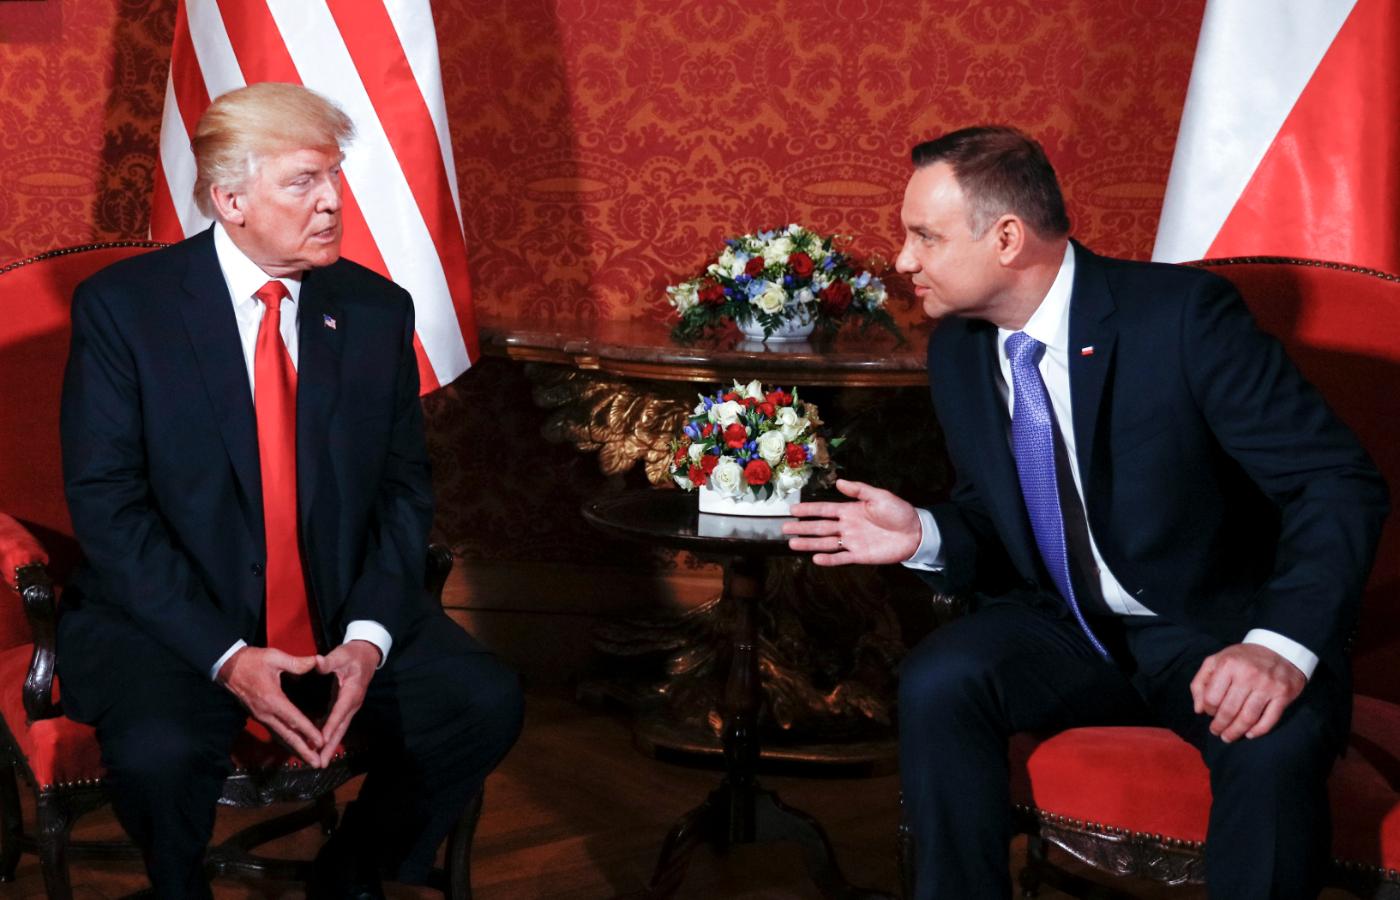 Spotkanie Donalda Trumpa z Andrzejem Dudą w Warszawie, lipiec 2017 r.